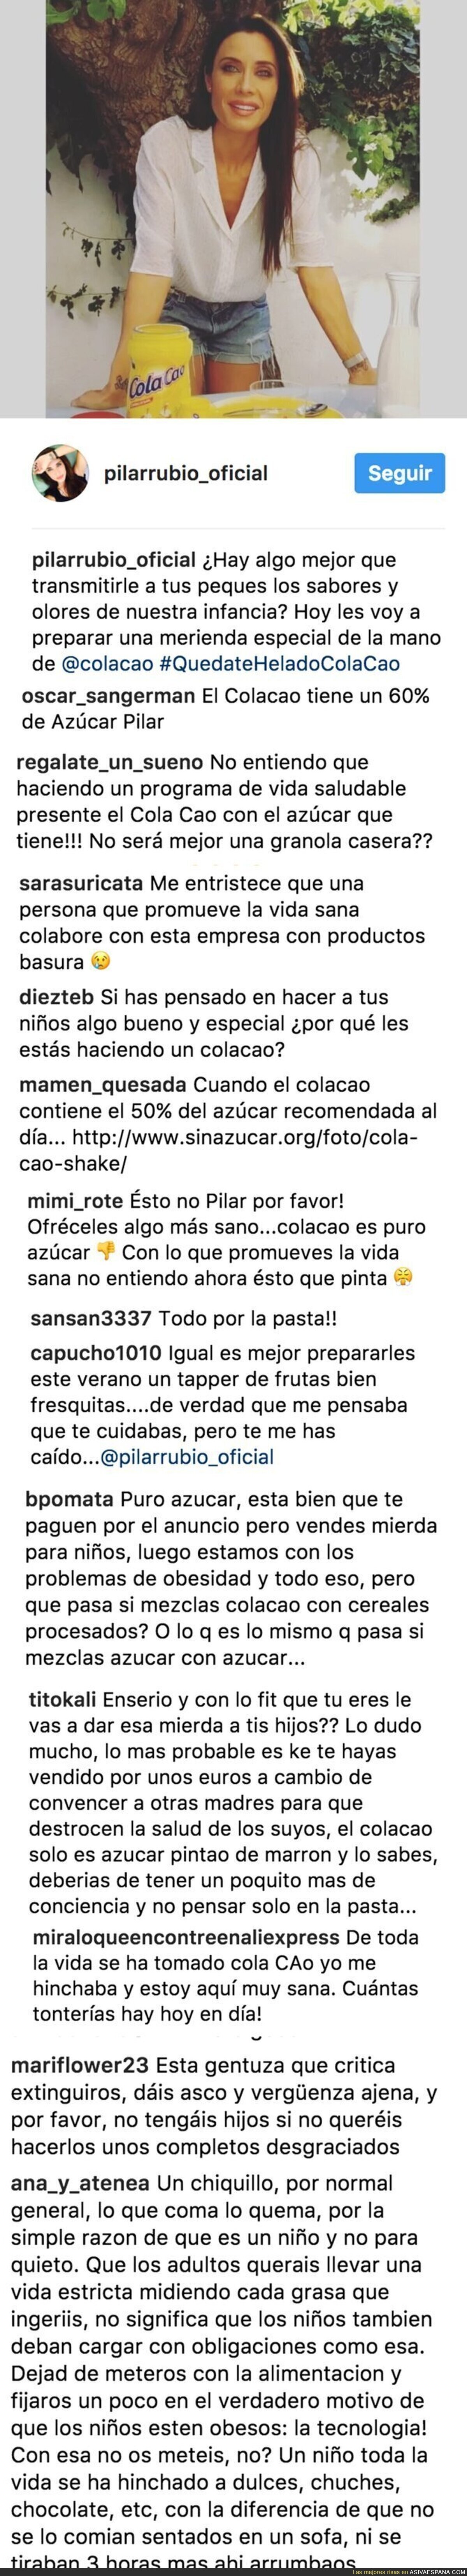 El Instagram de Pilar Rubio se llena de todas estas críticas por promocionar Cola Cao para los niñ